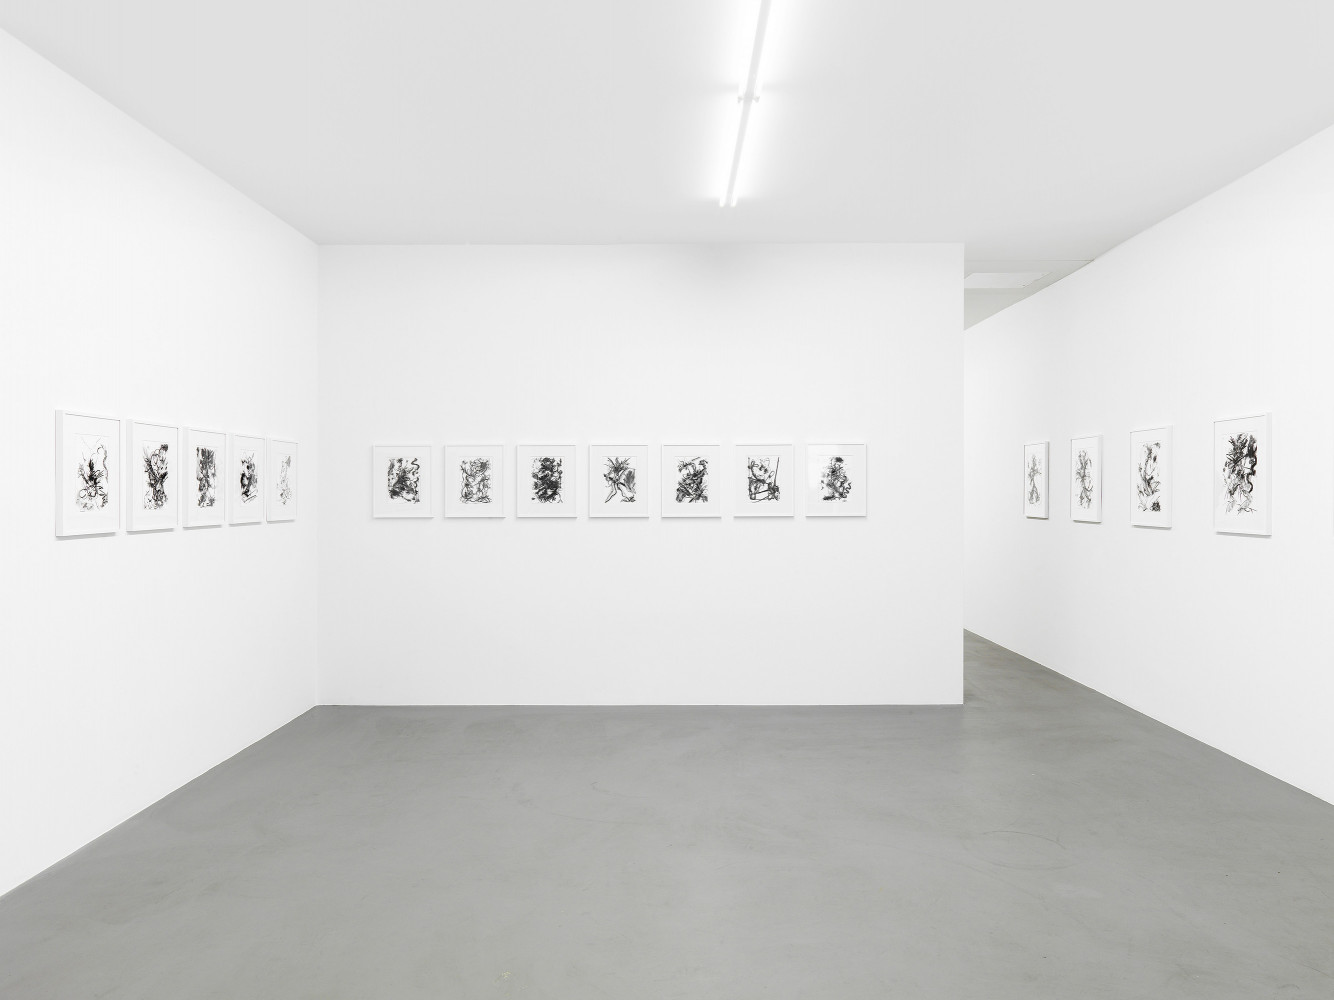 Fiona Rae, ‘Zeichnungen’, Installationsansicht, 2014